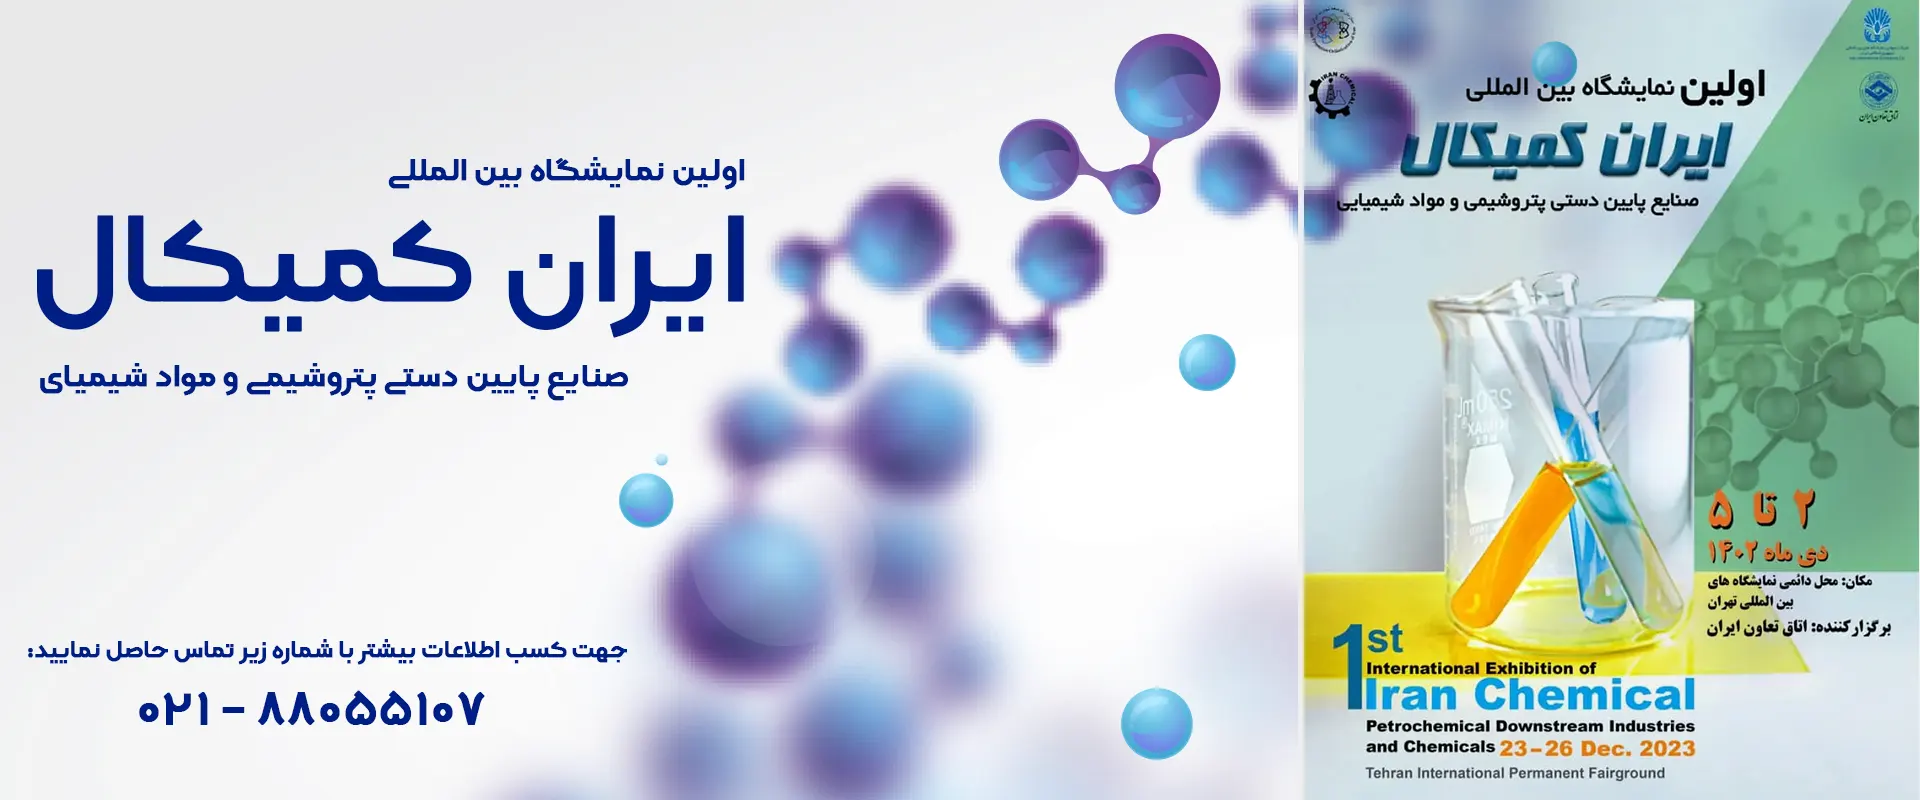 نمایشگاه ایران کمیکال - تاوا سلامت پاد